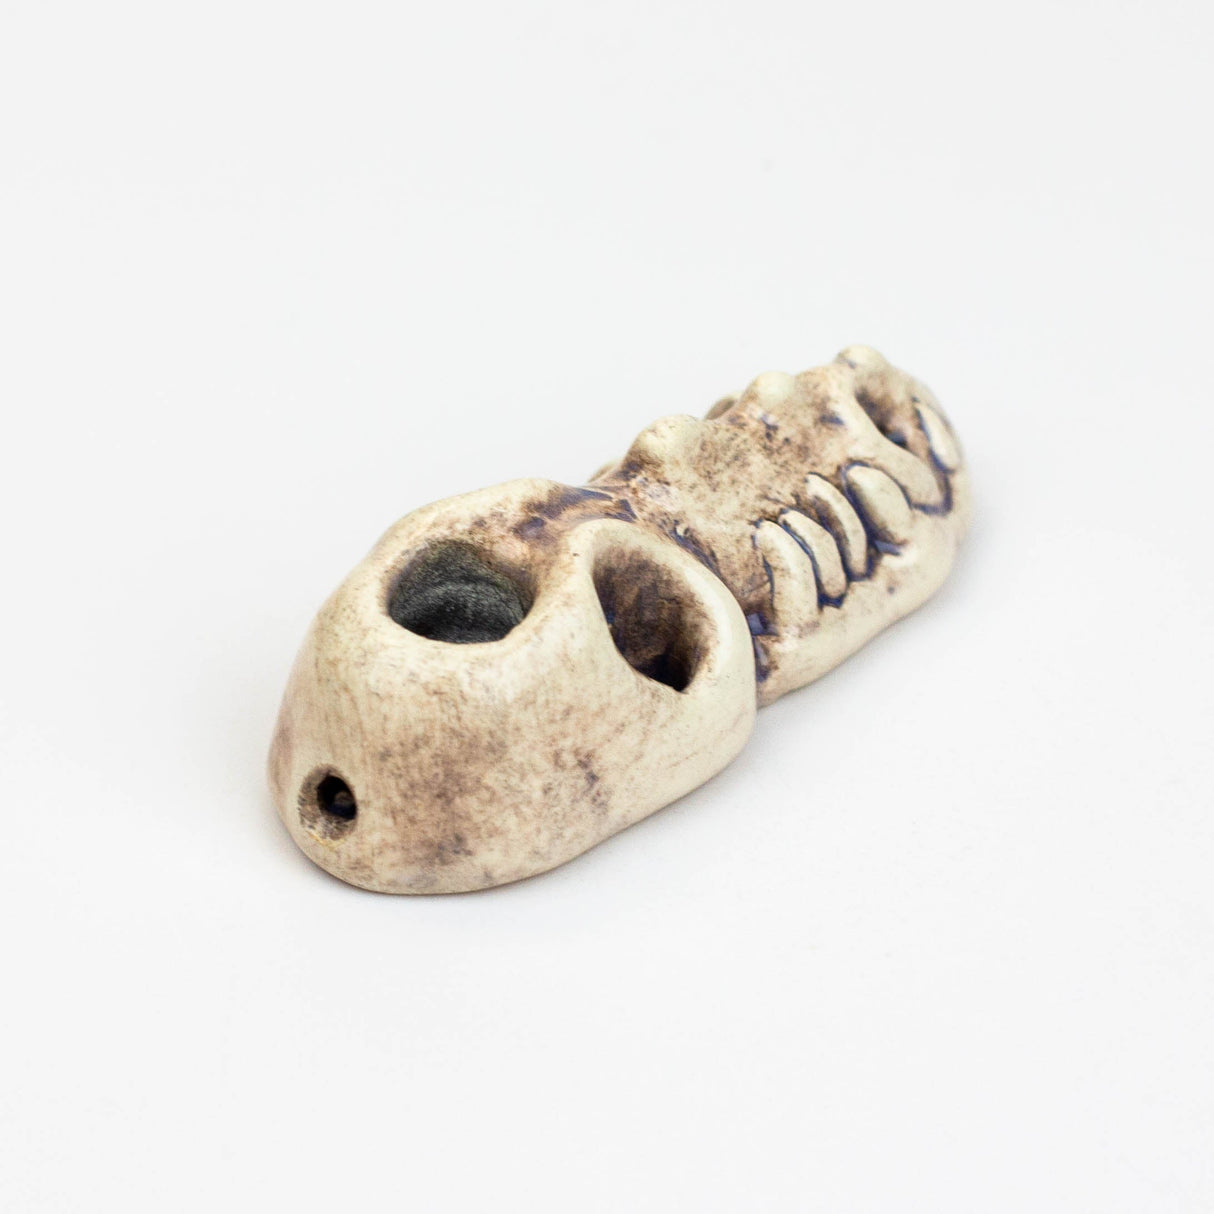 Handmade Ceramic Smoking Pipe [MINI GATOR]